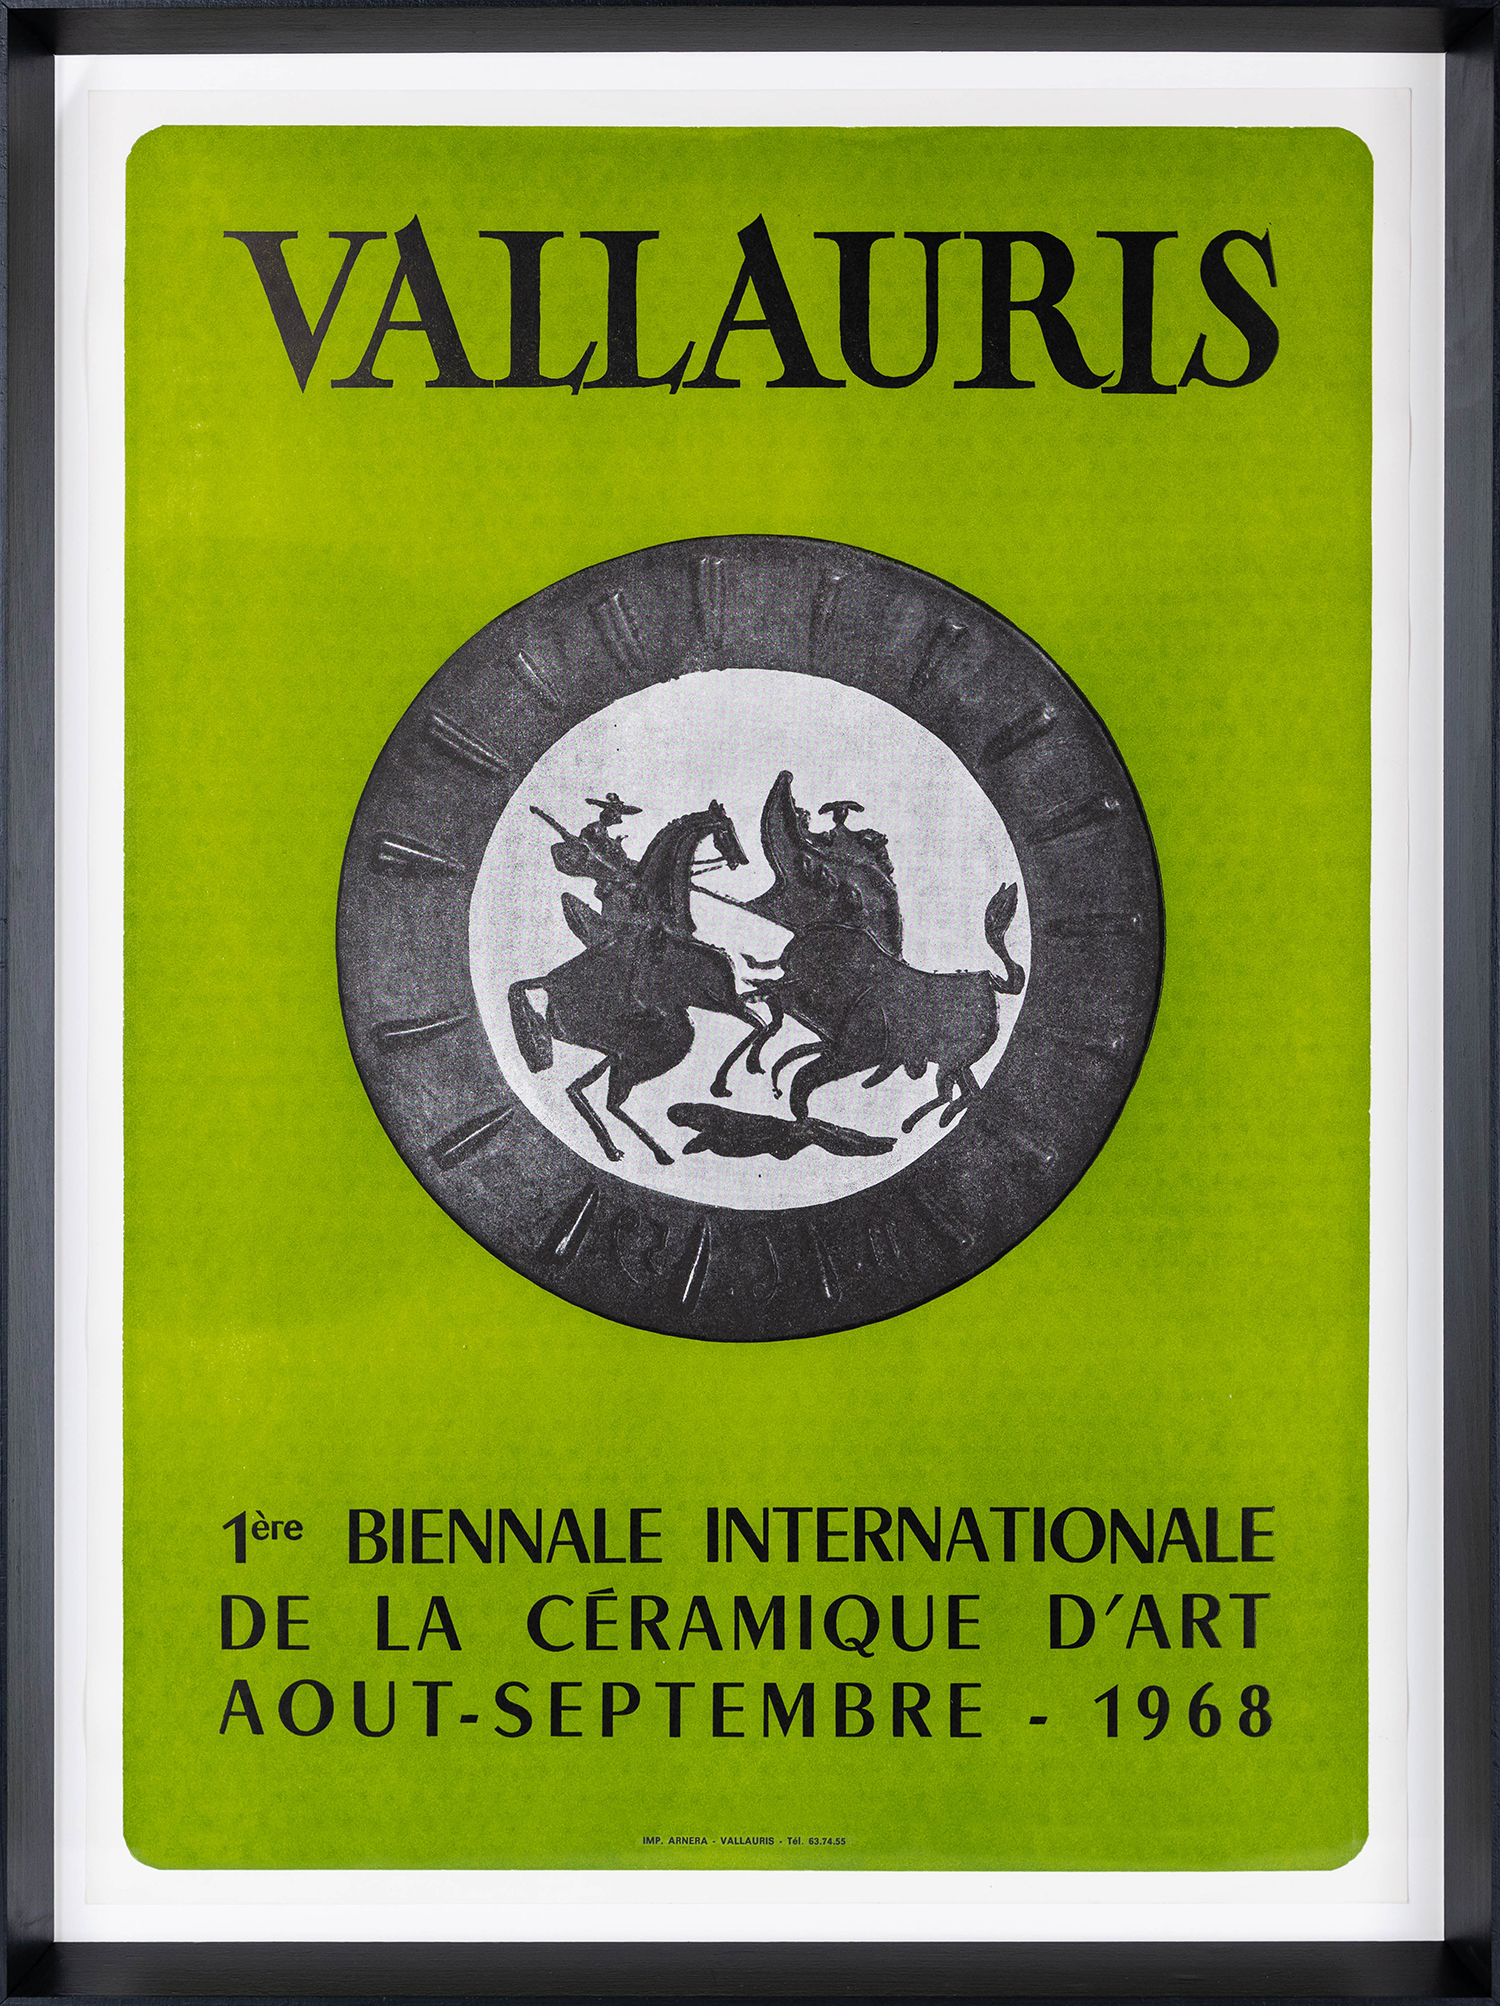 Vallauris 1ère Biennale Internationale de la Céramique d'Art, 1968